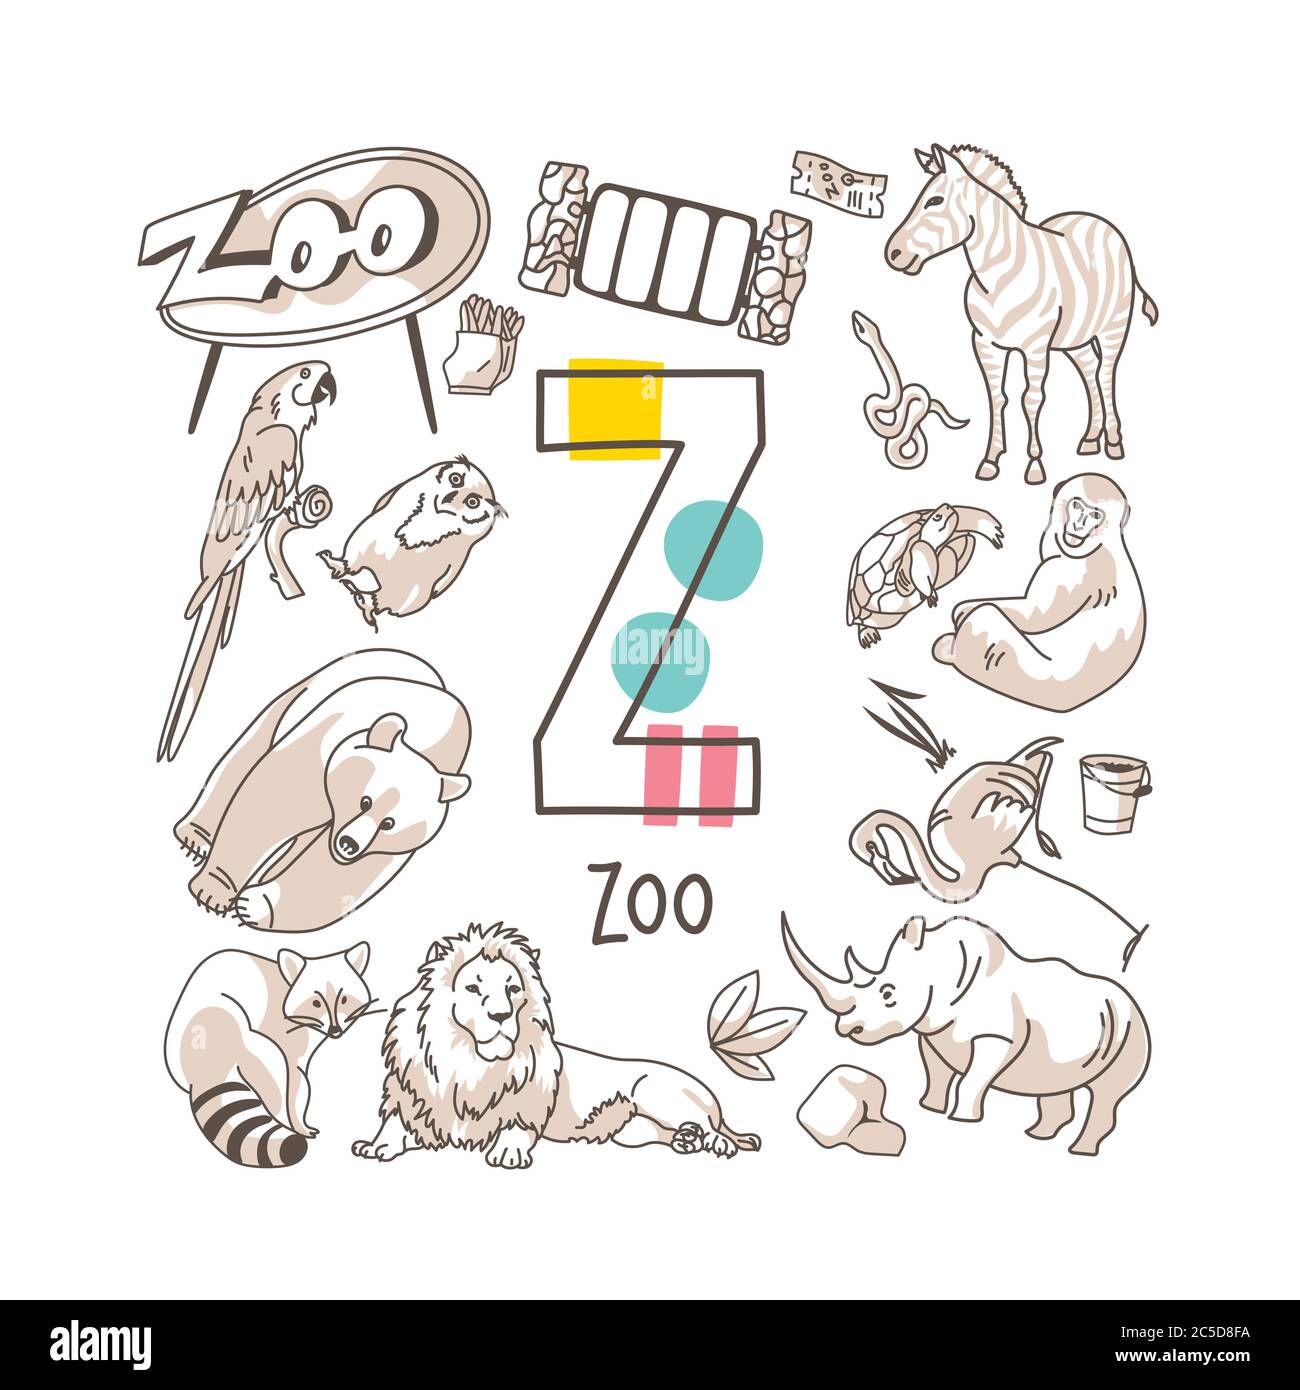 Buchstabe Z - Zoo, nette Alphabet-Reihe im Doodle-Stil, Vektor-Illustration Stock Vektor